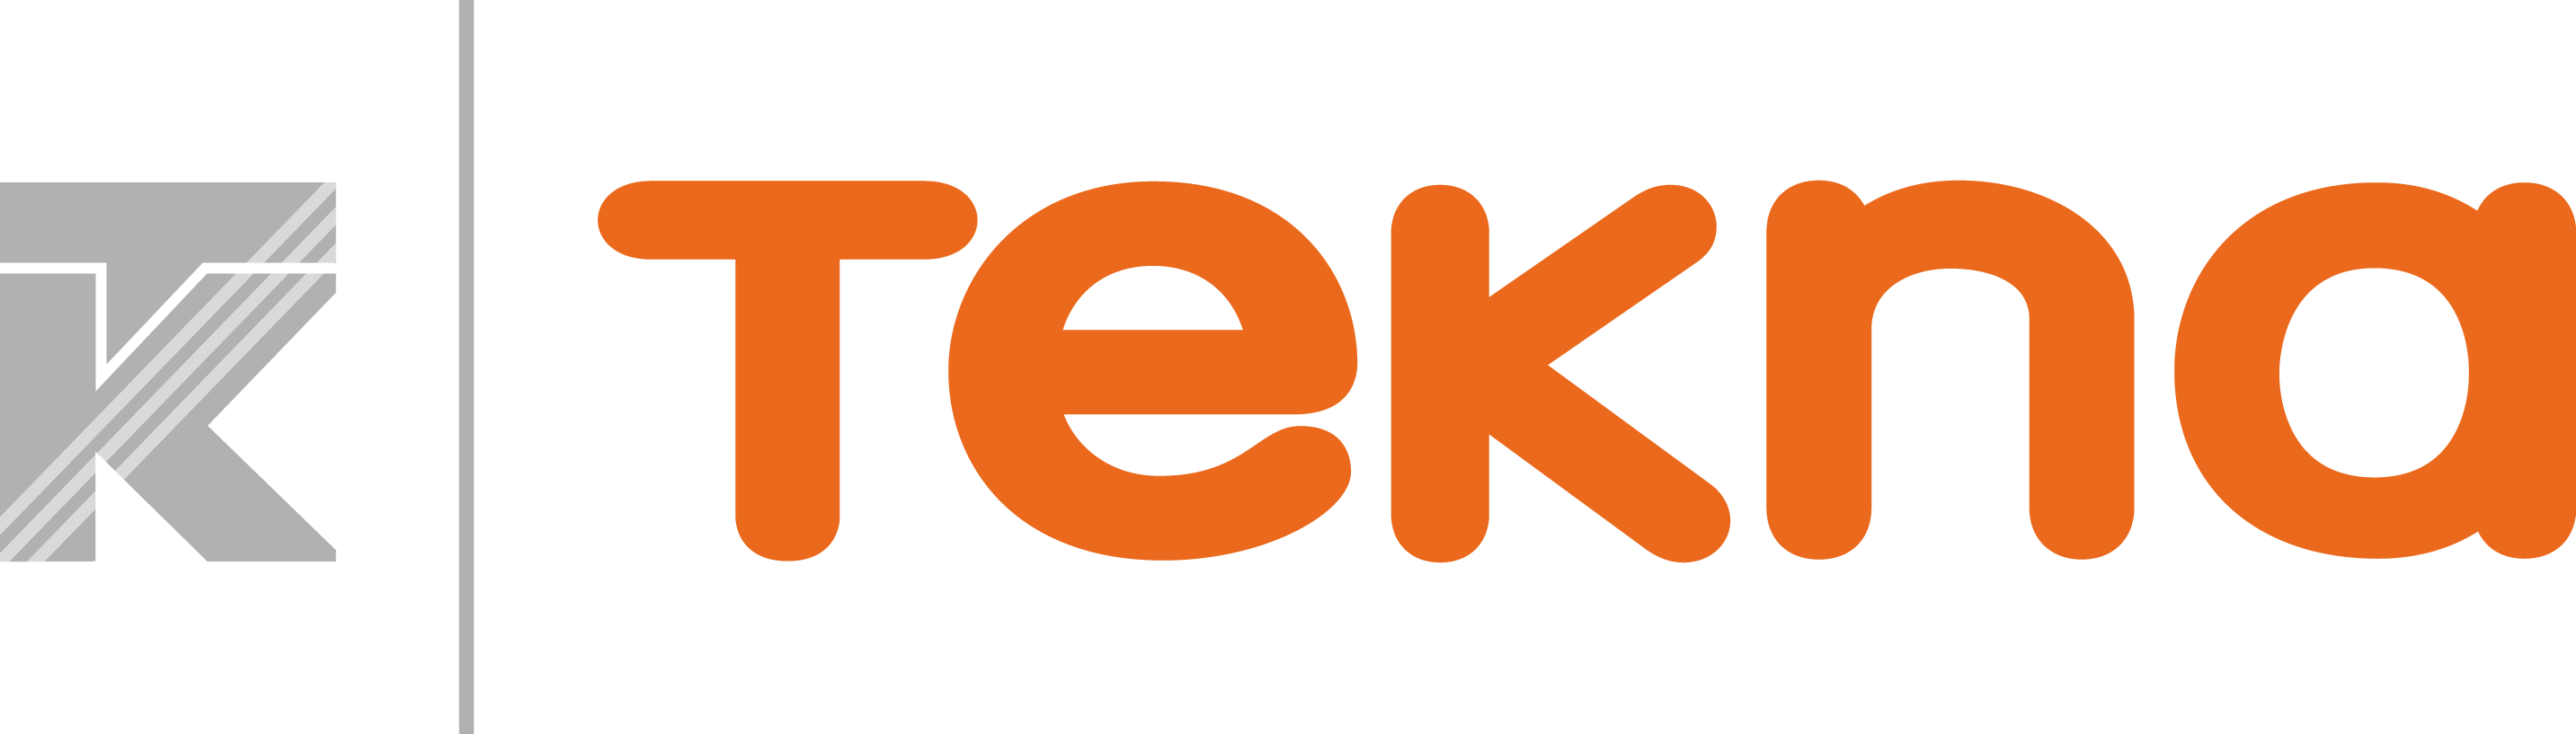 tekna_logo